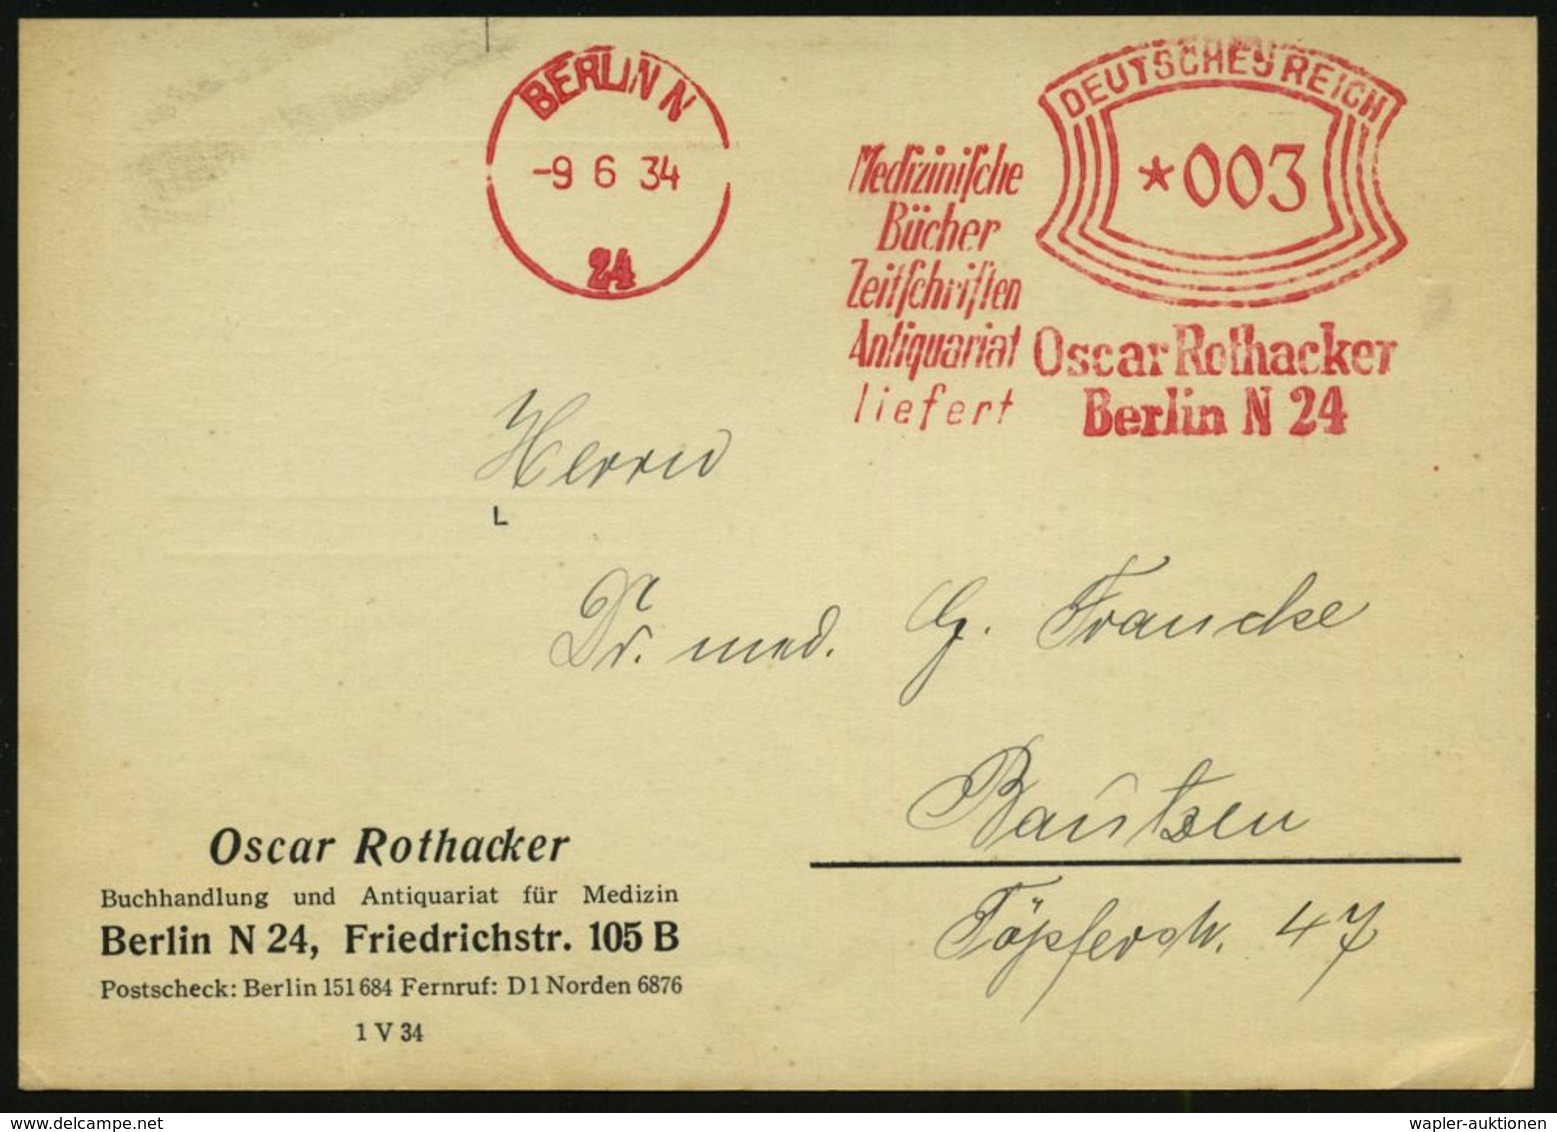 MEDIZIN / GESUNDHEITSWESEN : BERLIN N/ 24/ Medizin./ Bücher/ Zeitschriften/ Antiquariat/ Liefert/ Oscar Rothacker 1934 ( - Medizin